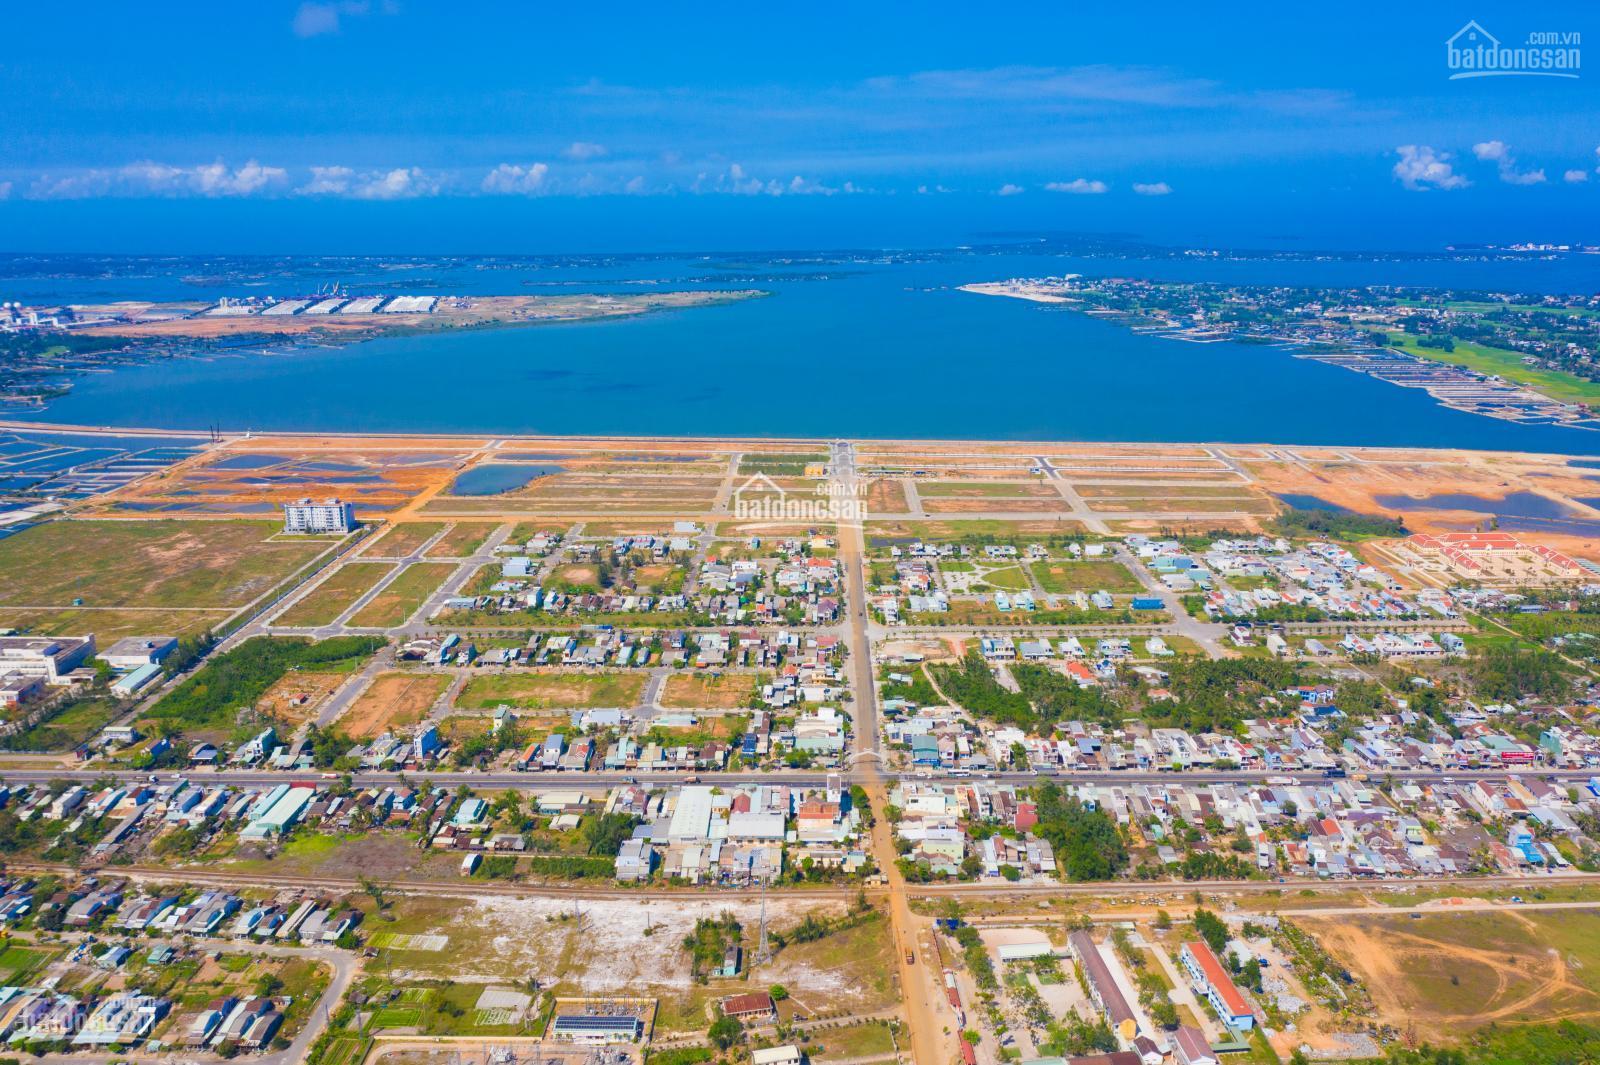 Vịnh An Hoà City – Chính sách thanh toán VÔ TIỀN KHOÁNG HẬU, giá chỉ 1.45 tỷ/ 150m2. 5